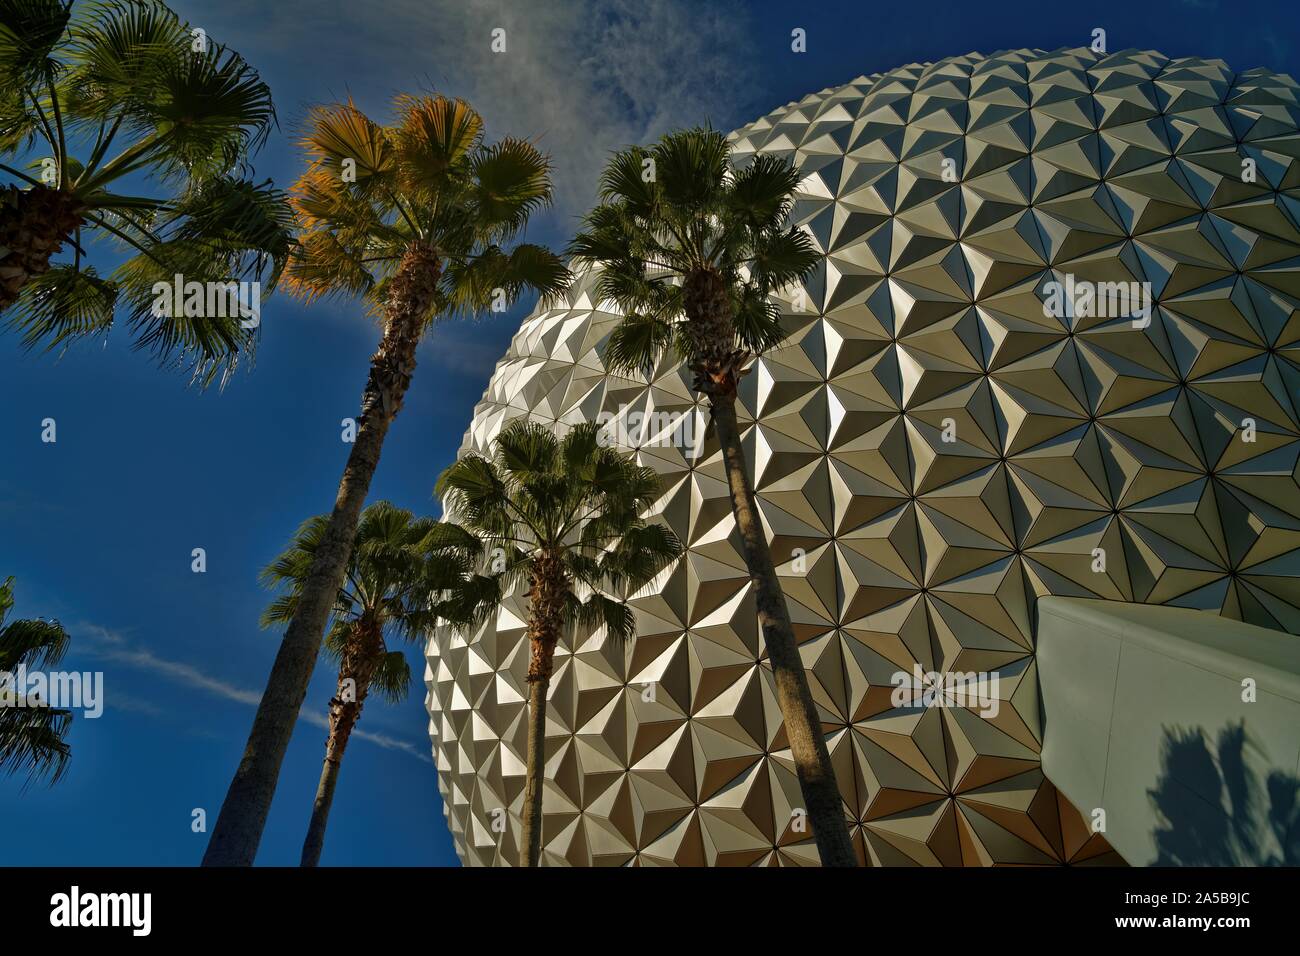 Das Kugelschiff Earth Attraction in Epcot in Walt Disney World in Orlando Florida mit Bäumen und Wolken am Himmel. Stockfoto